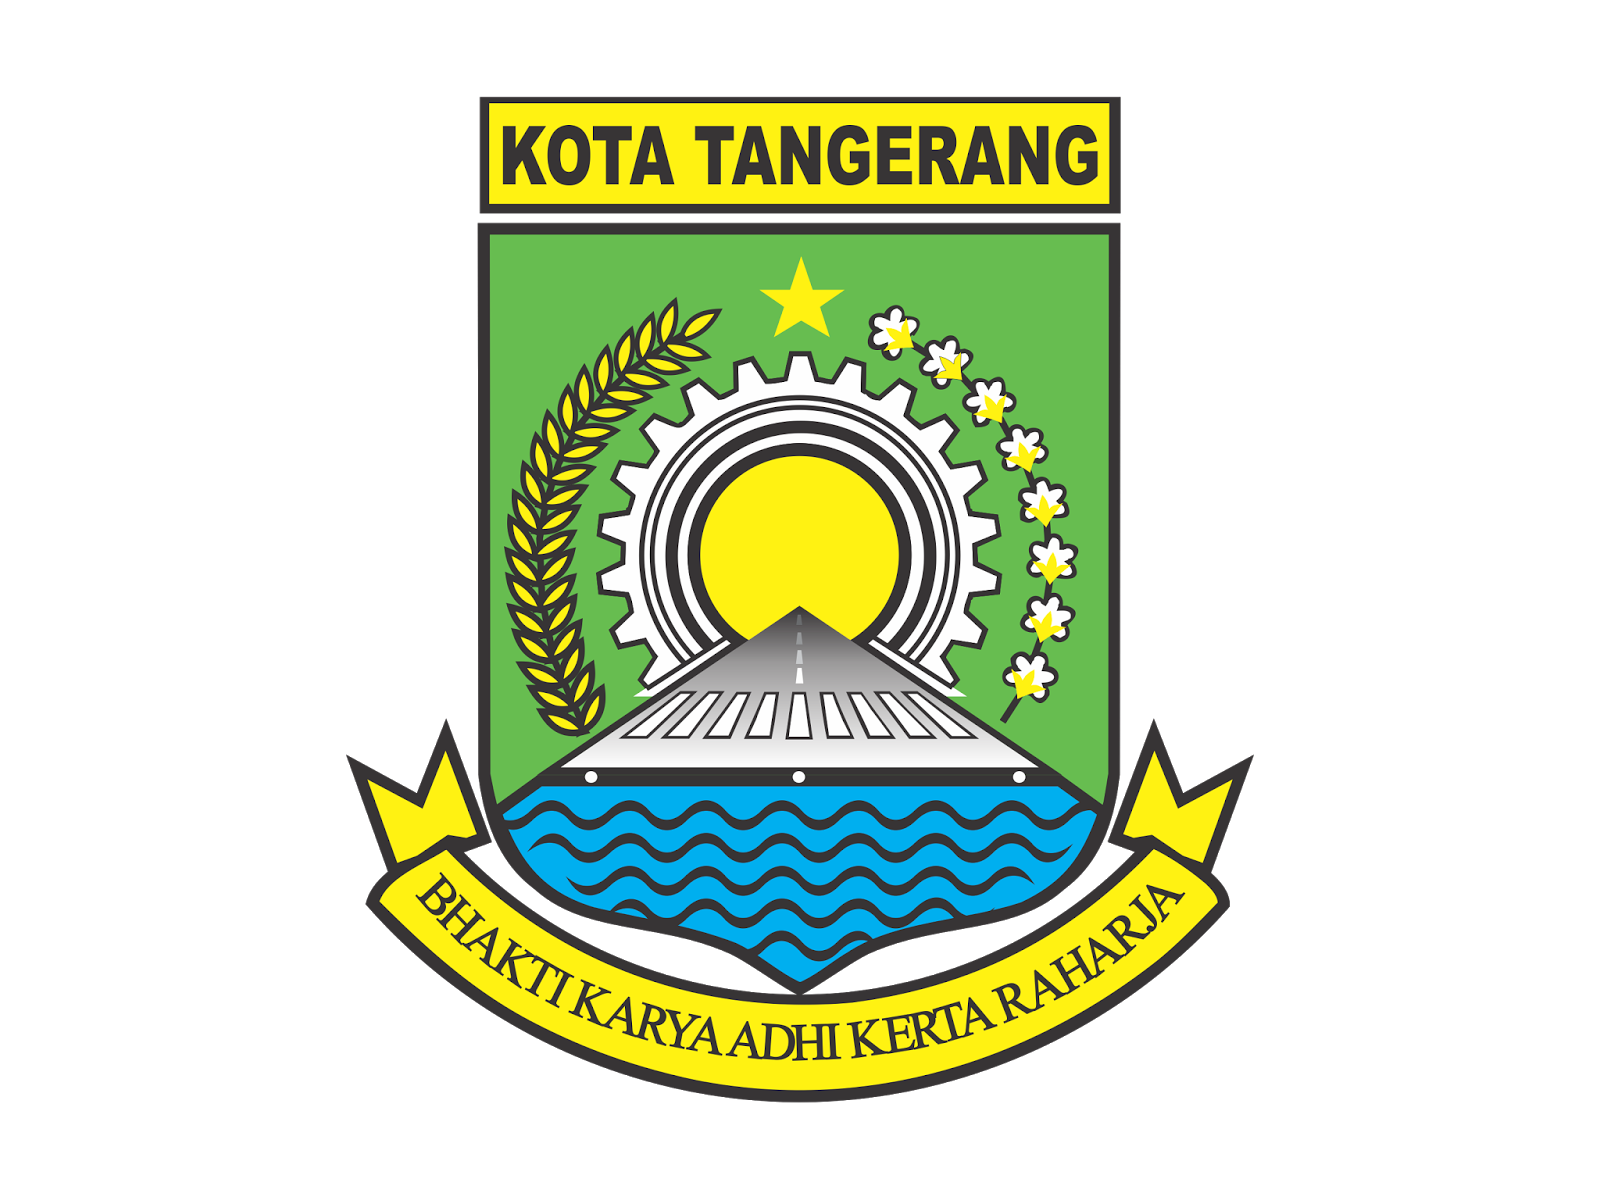  Logo Kota Tangerang  Format Cdr Png GUDRIL LOGO  